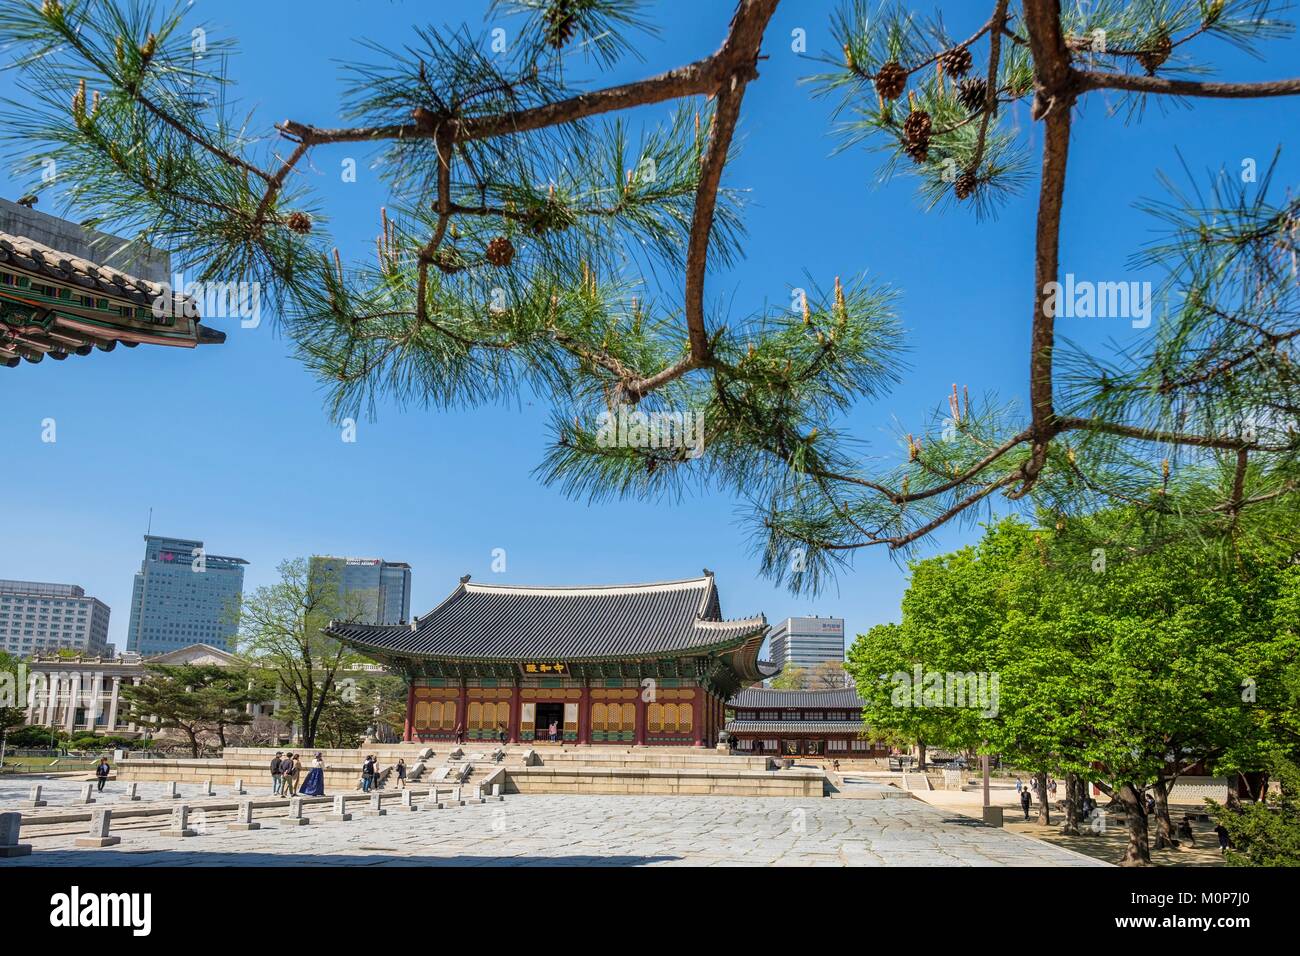 La Corée du Sud, Séoul, Jung-gu district,palais Deoksugung ou palais de la longévité vertueuse construit par les rois de la dynastie Joseon Banque D'Images